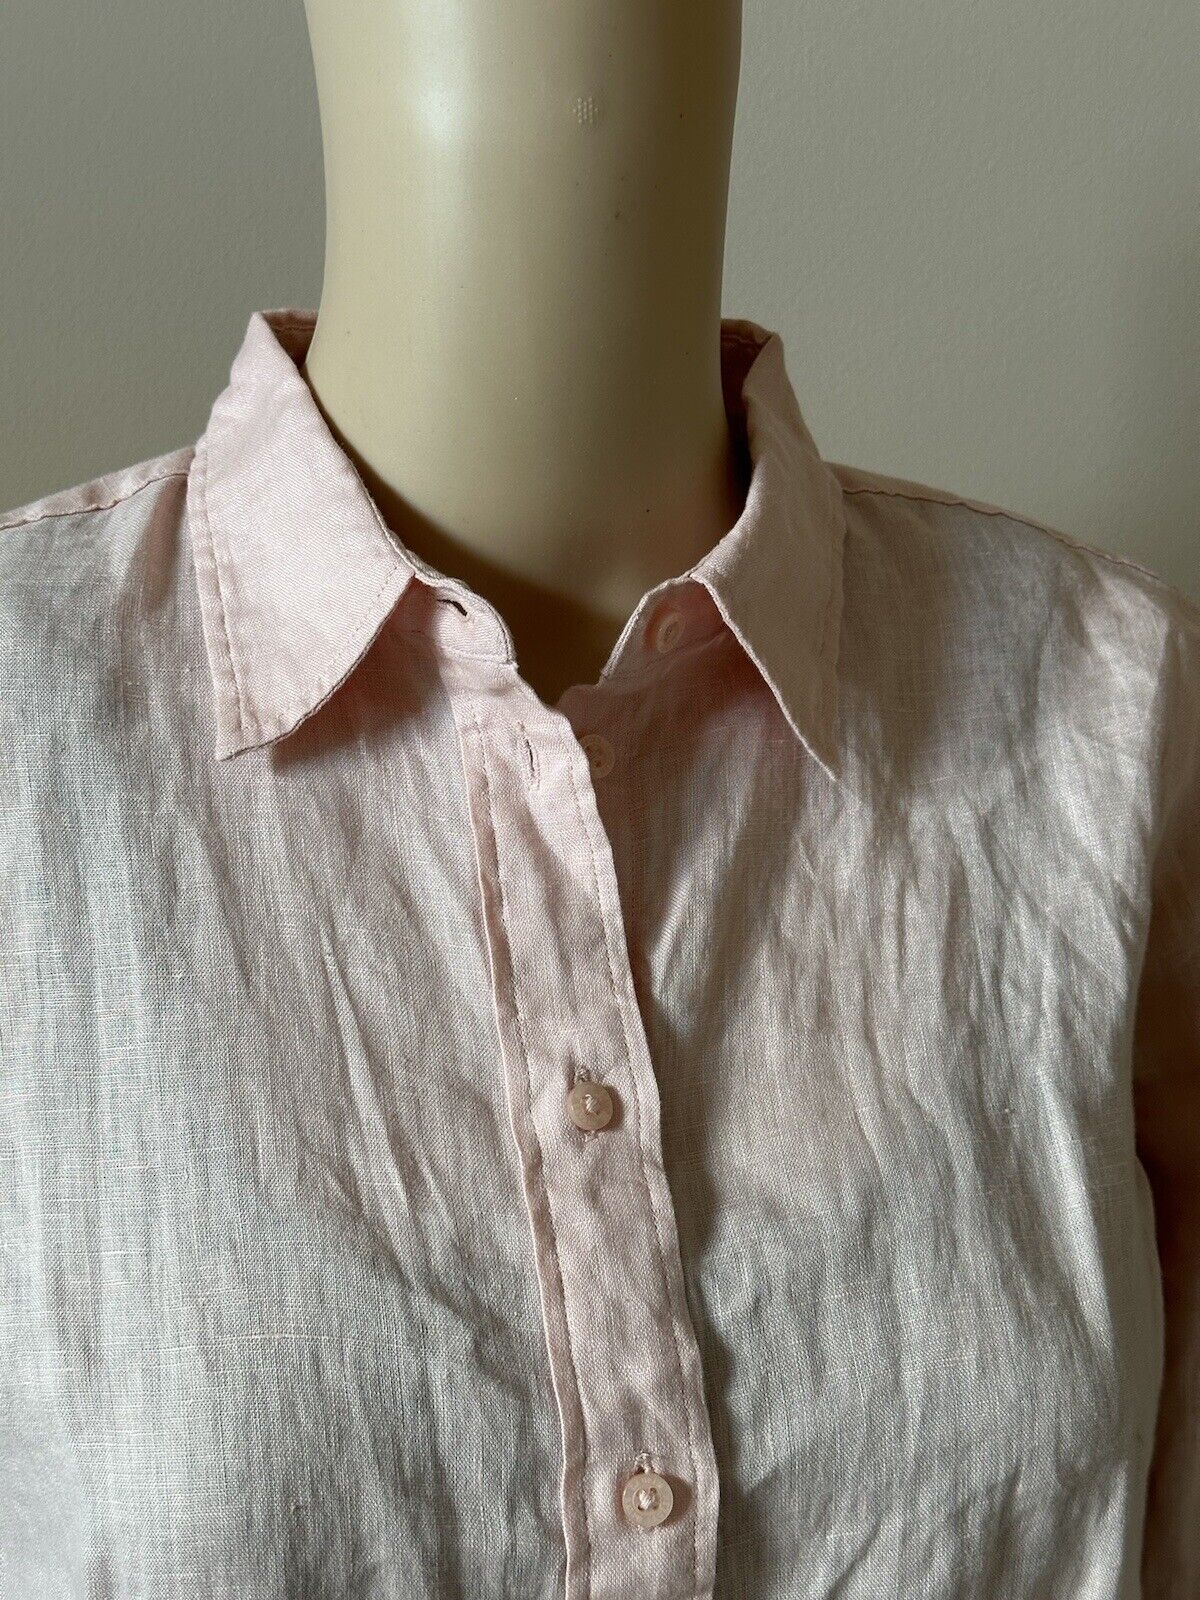 NWT $115 Lauren Ralph Lauren Women’s Linen Long Sleeve Shirt Pale Pink Medium